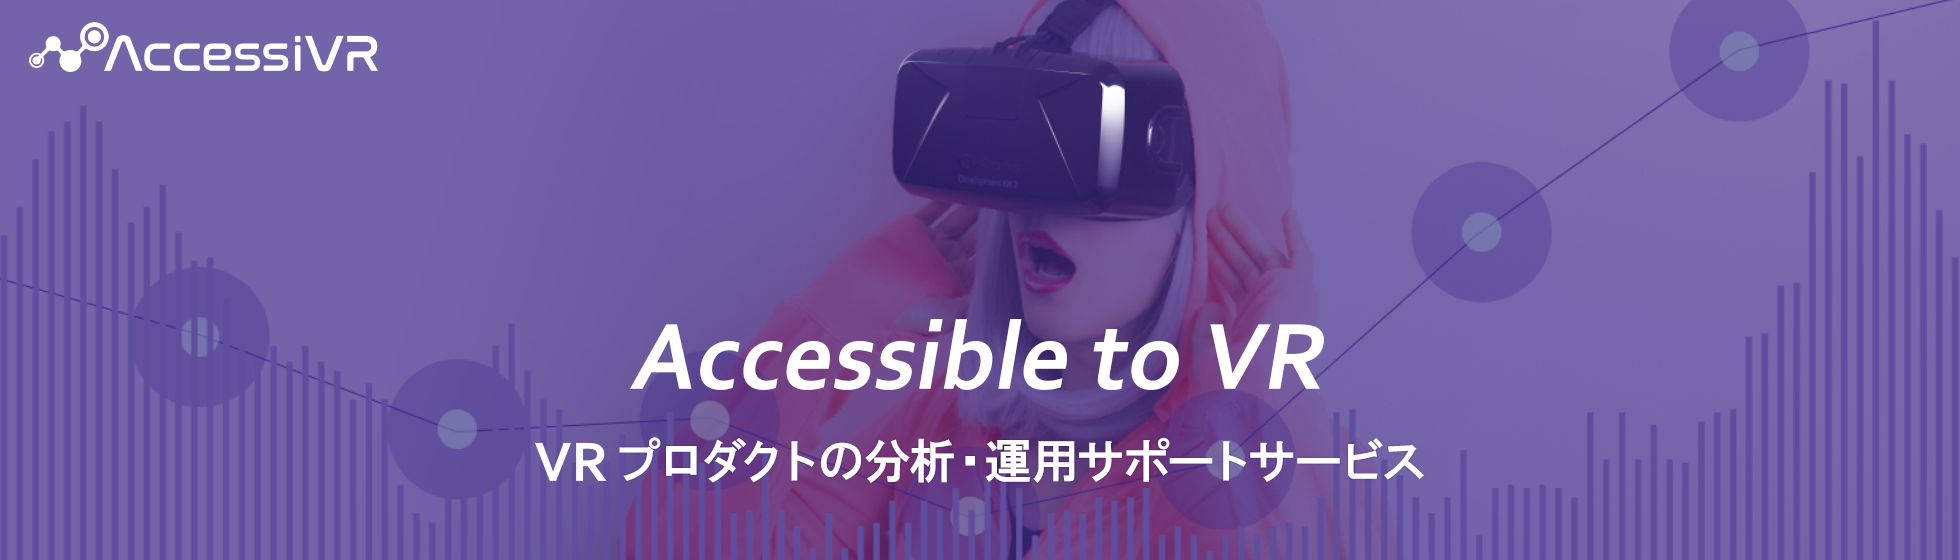 ダズル、” 2億円の増資でVR事業加速 ”VRプロダクト分析サービス「アクセシブル」クローズドβ提供開始